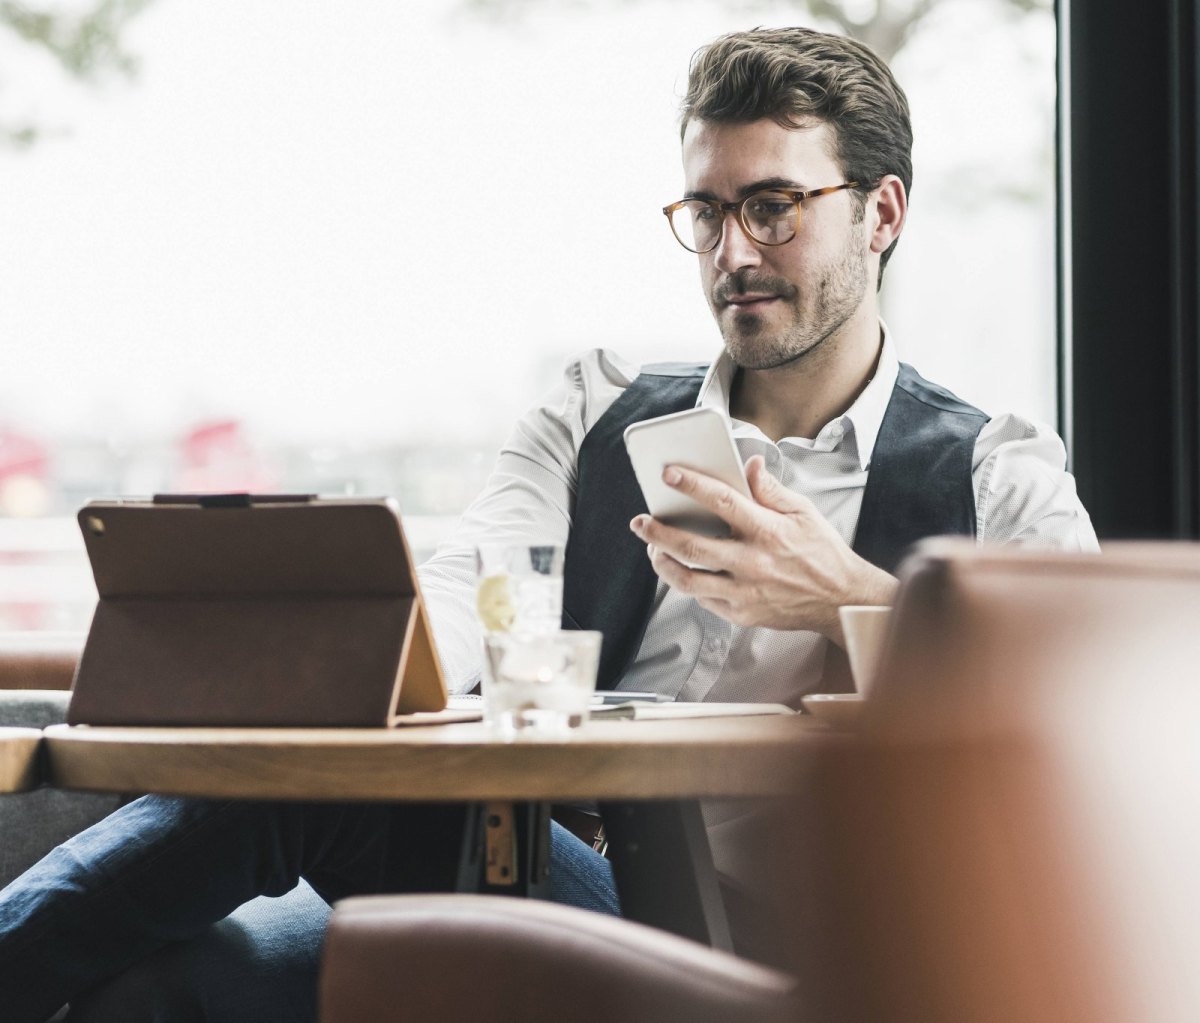 Mann am Tablet mit Smartphone in einem Café